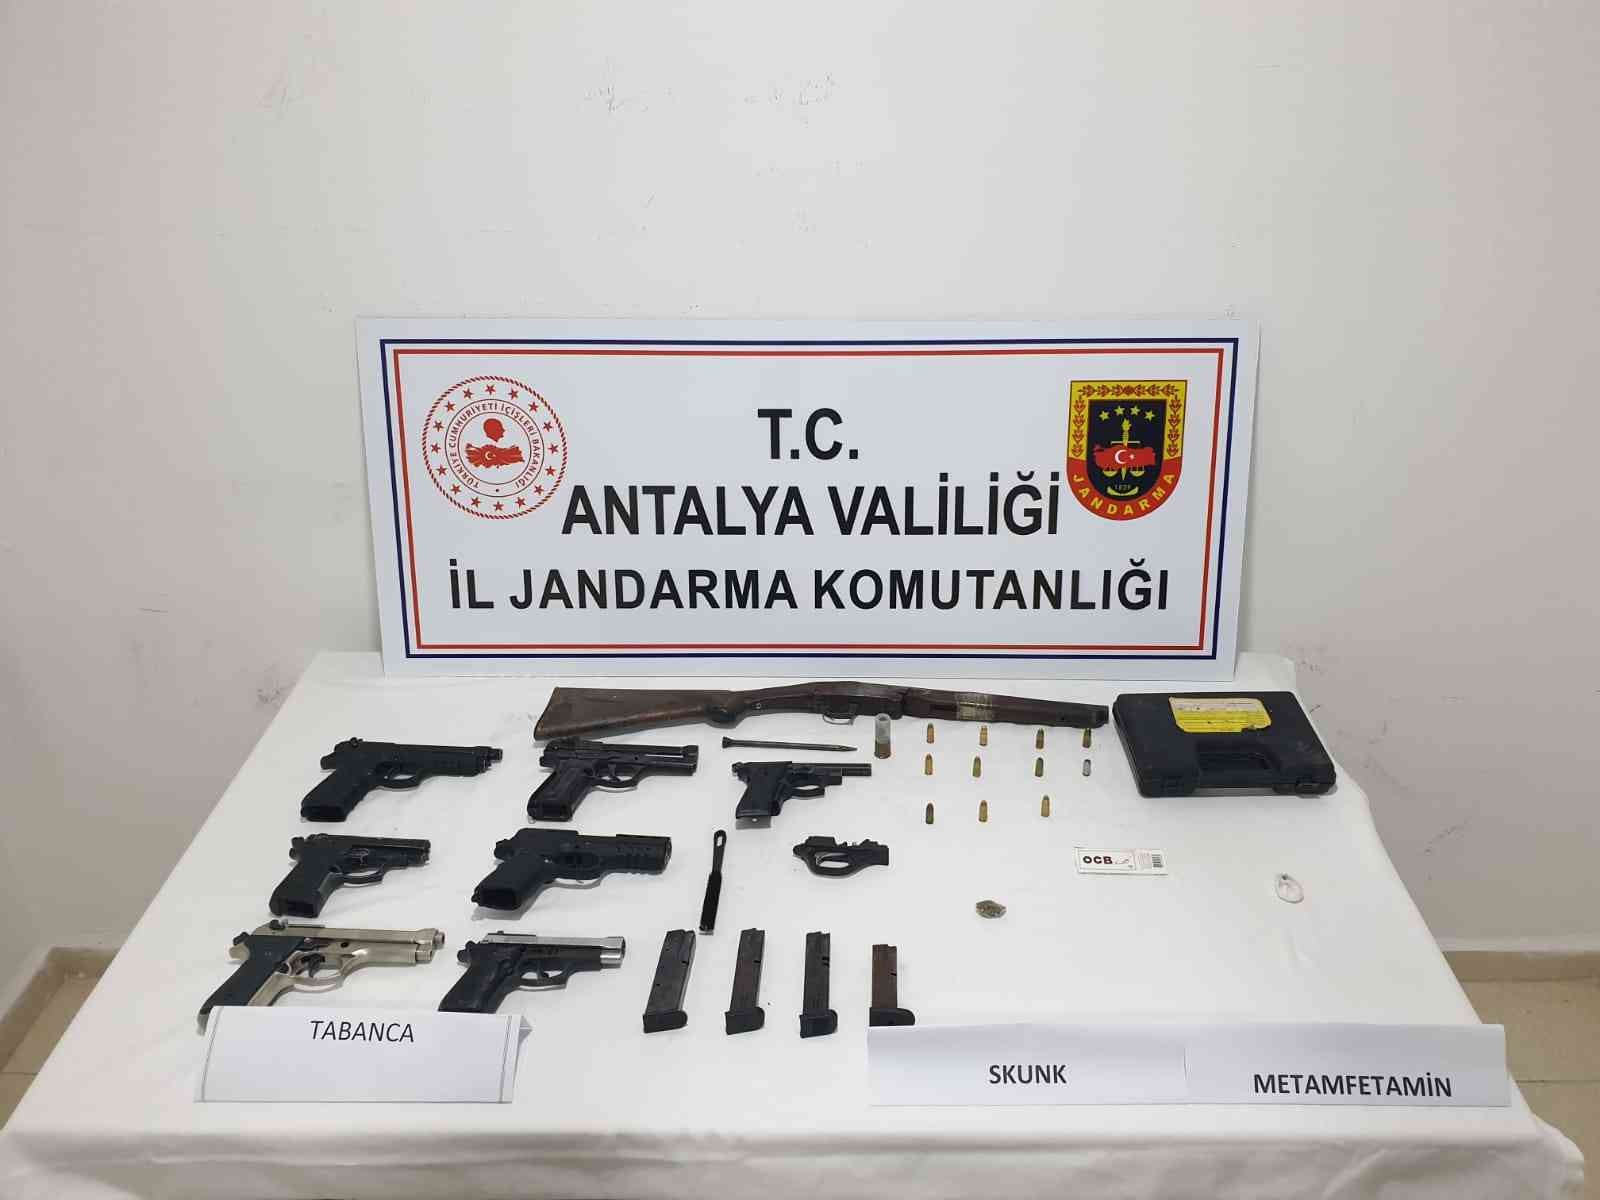 Antalya’da silah kaçakçılığı operasyonu #antalya